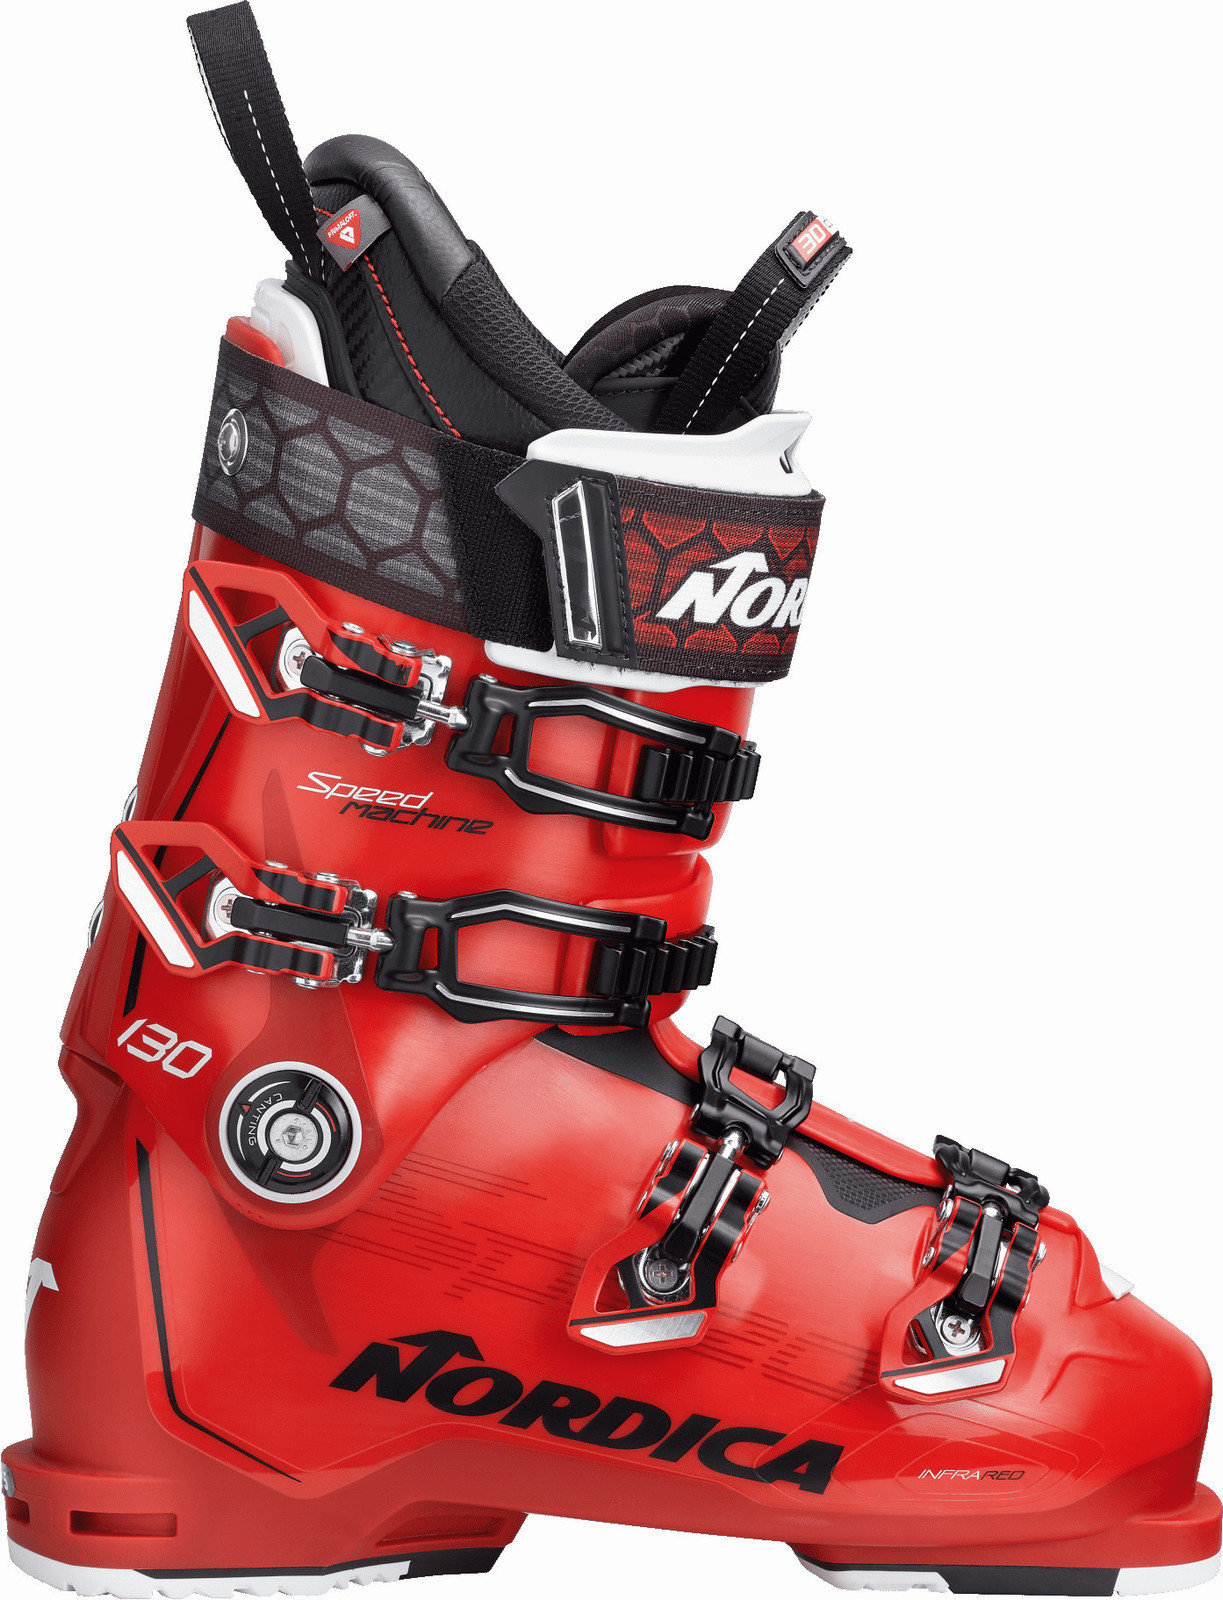 Cipele za alpsko skijanje Nordica Speedmachine 130 Red-Black-White 27.5 18/19